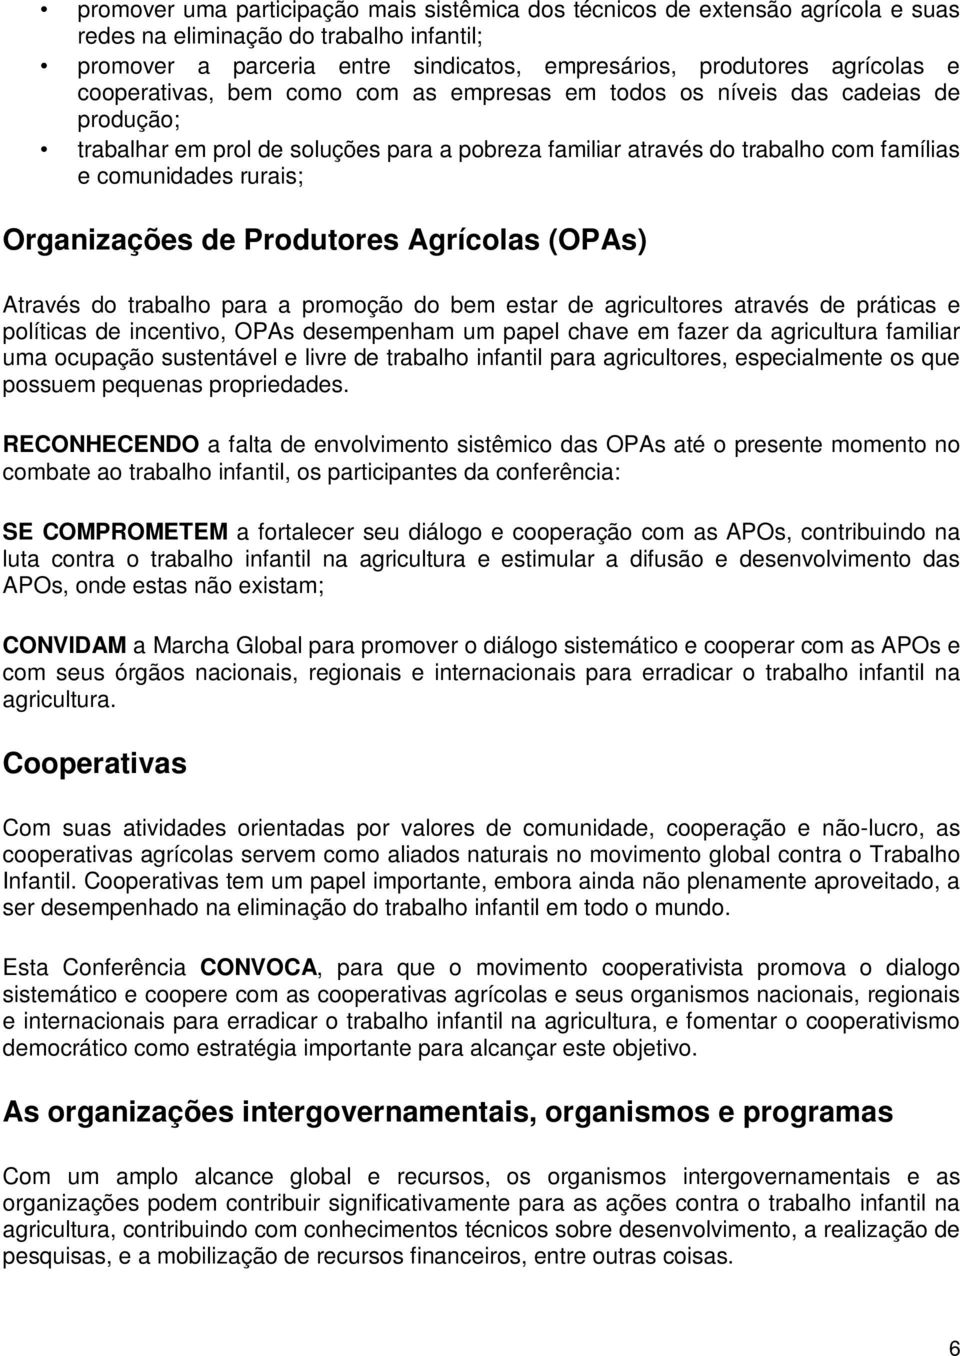 Organizações de Produtores Agrícolas (OPAs) Através do trabalho para a promoção do bem estar de agricultores através de práticas e políticas de incentivo, OPAs desempenham um papel chave em fazer da